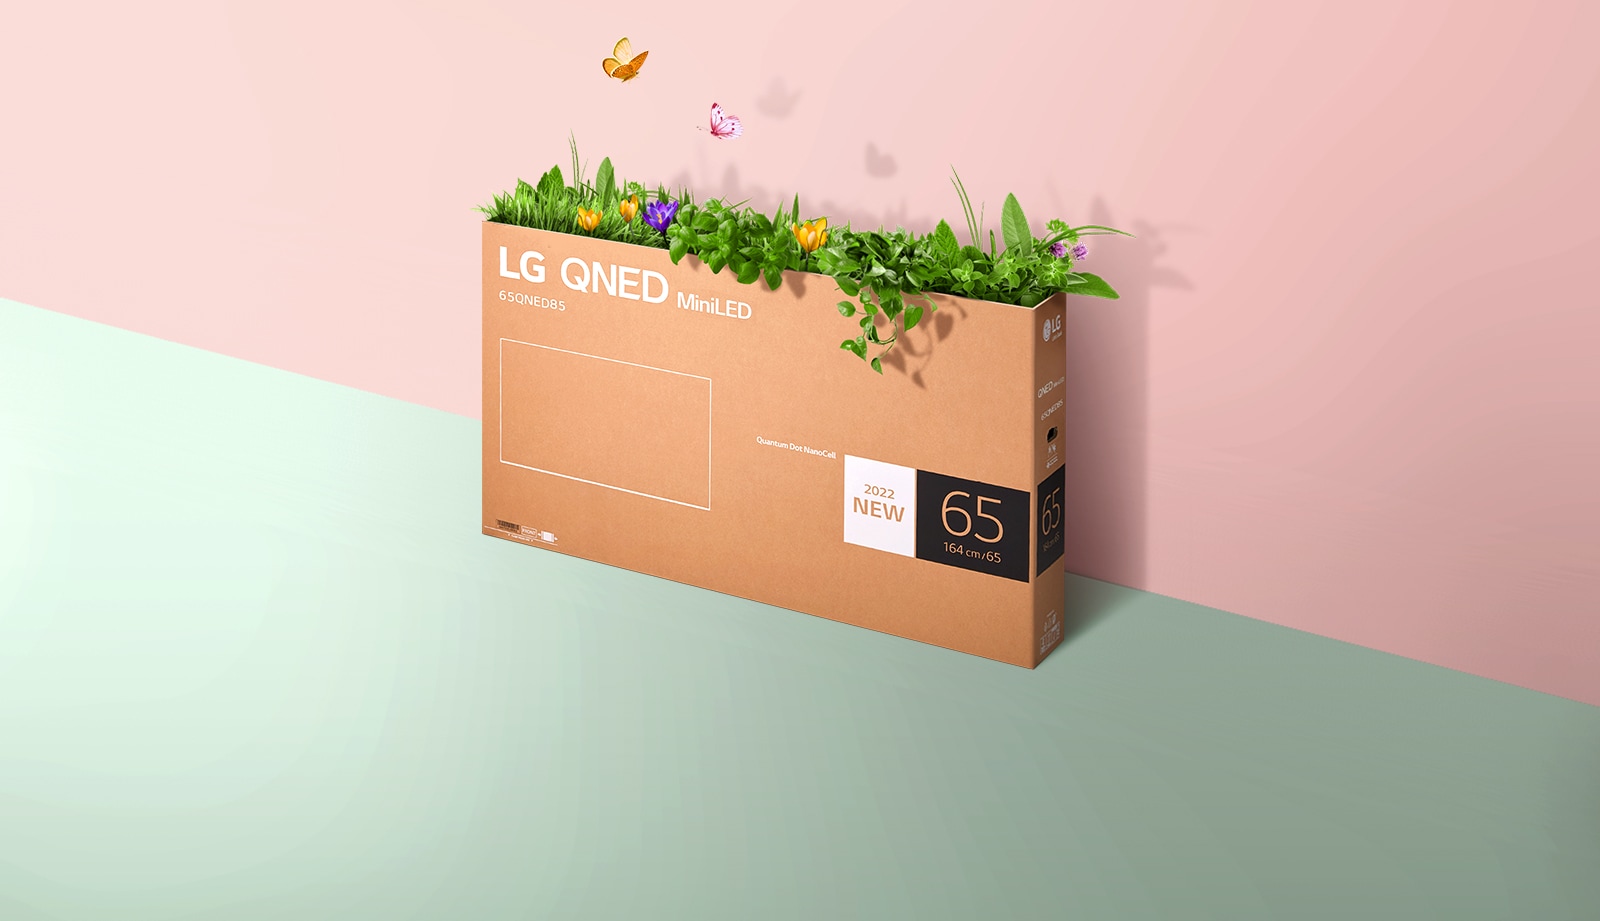 Коробку для пакування телевізора QNED розташовано на рожево-зеленому фоні, і з коробки проростає трава й вилітають метелики. 